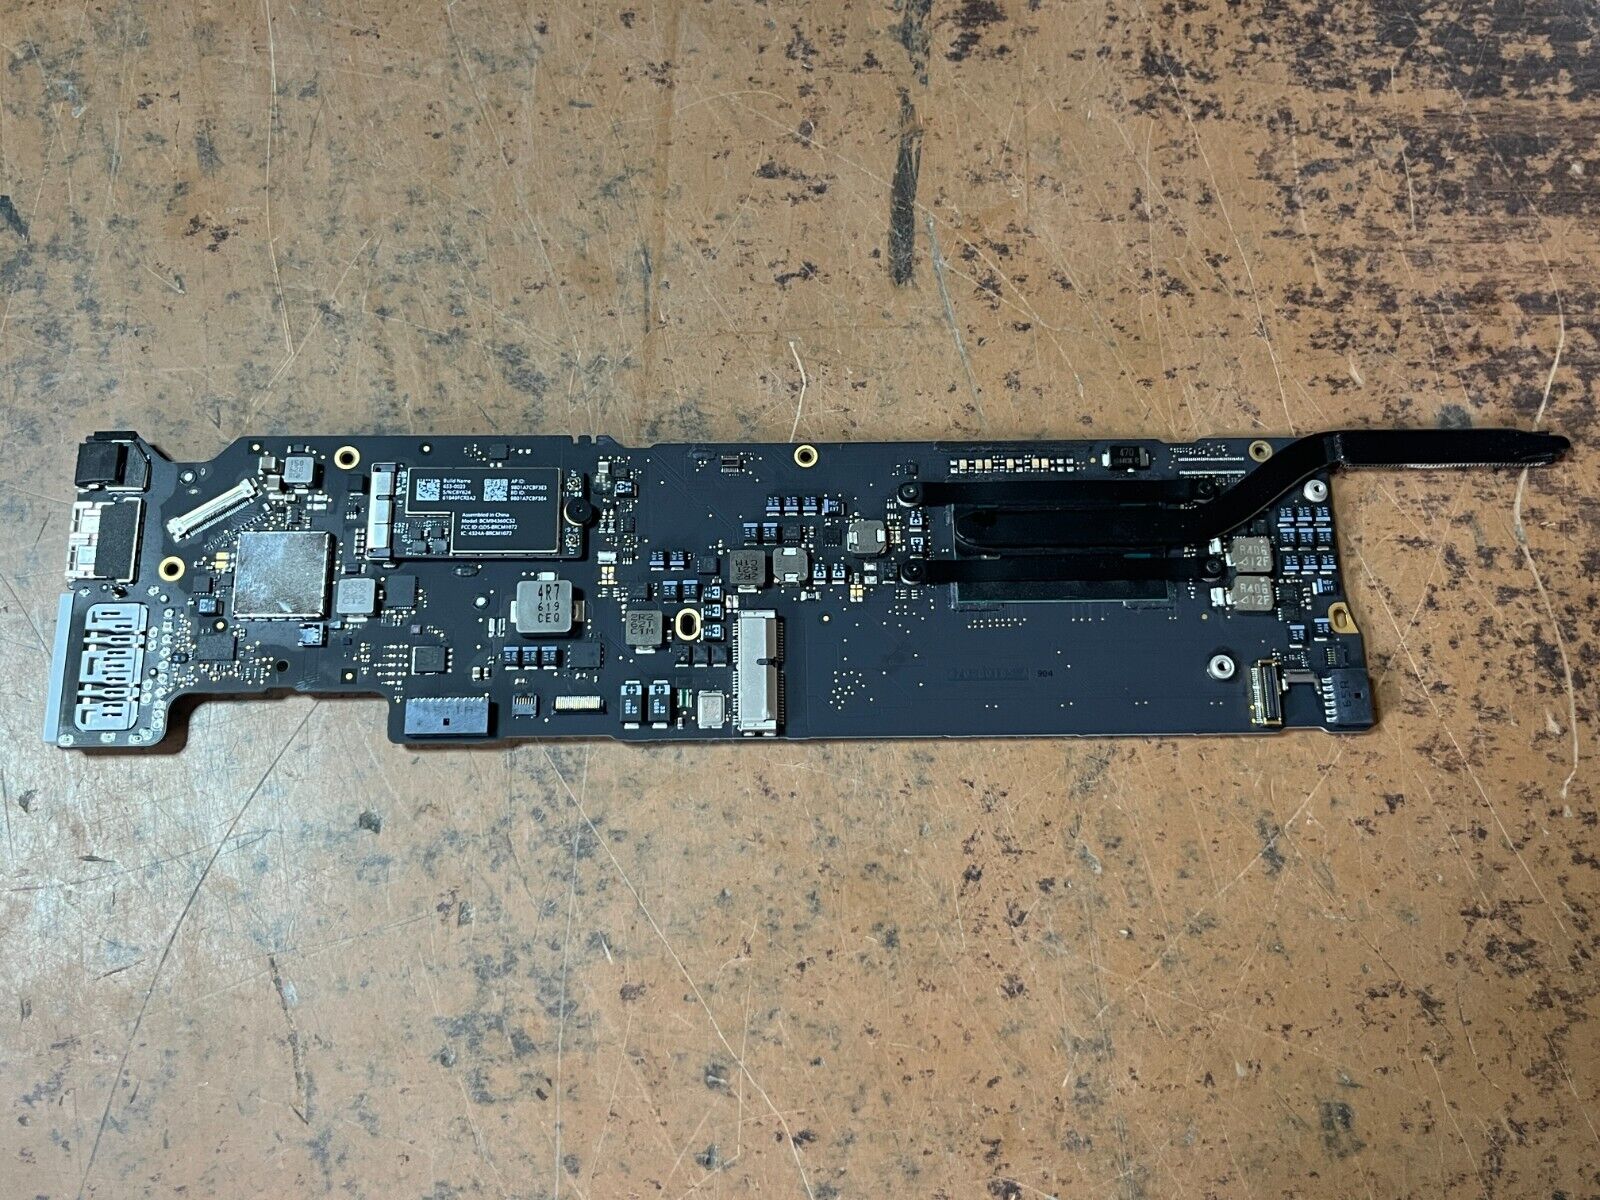 820-00165-A Logic Board core i5 2015 1.6GHz 8GB RAM Apple MacBook Air 13